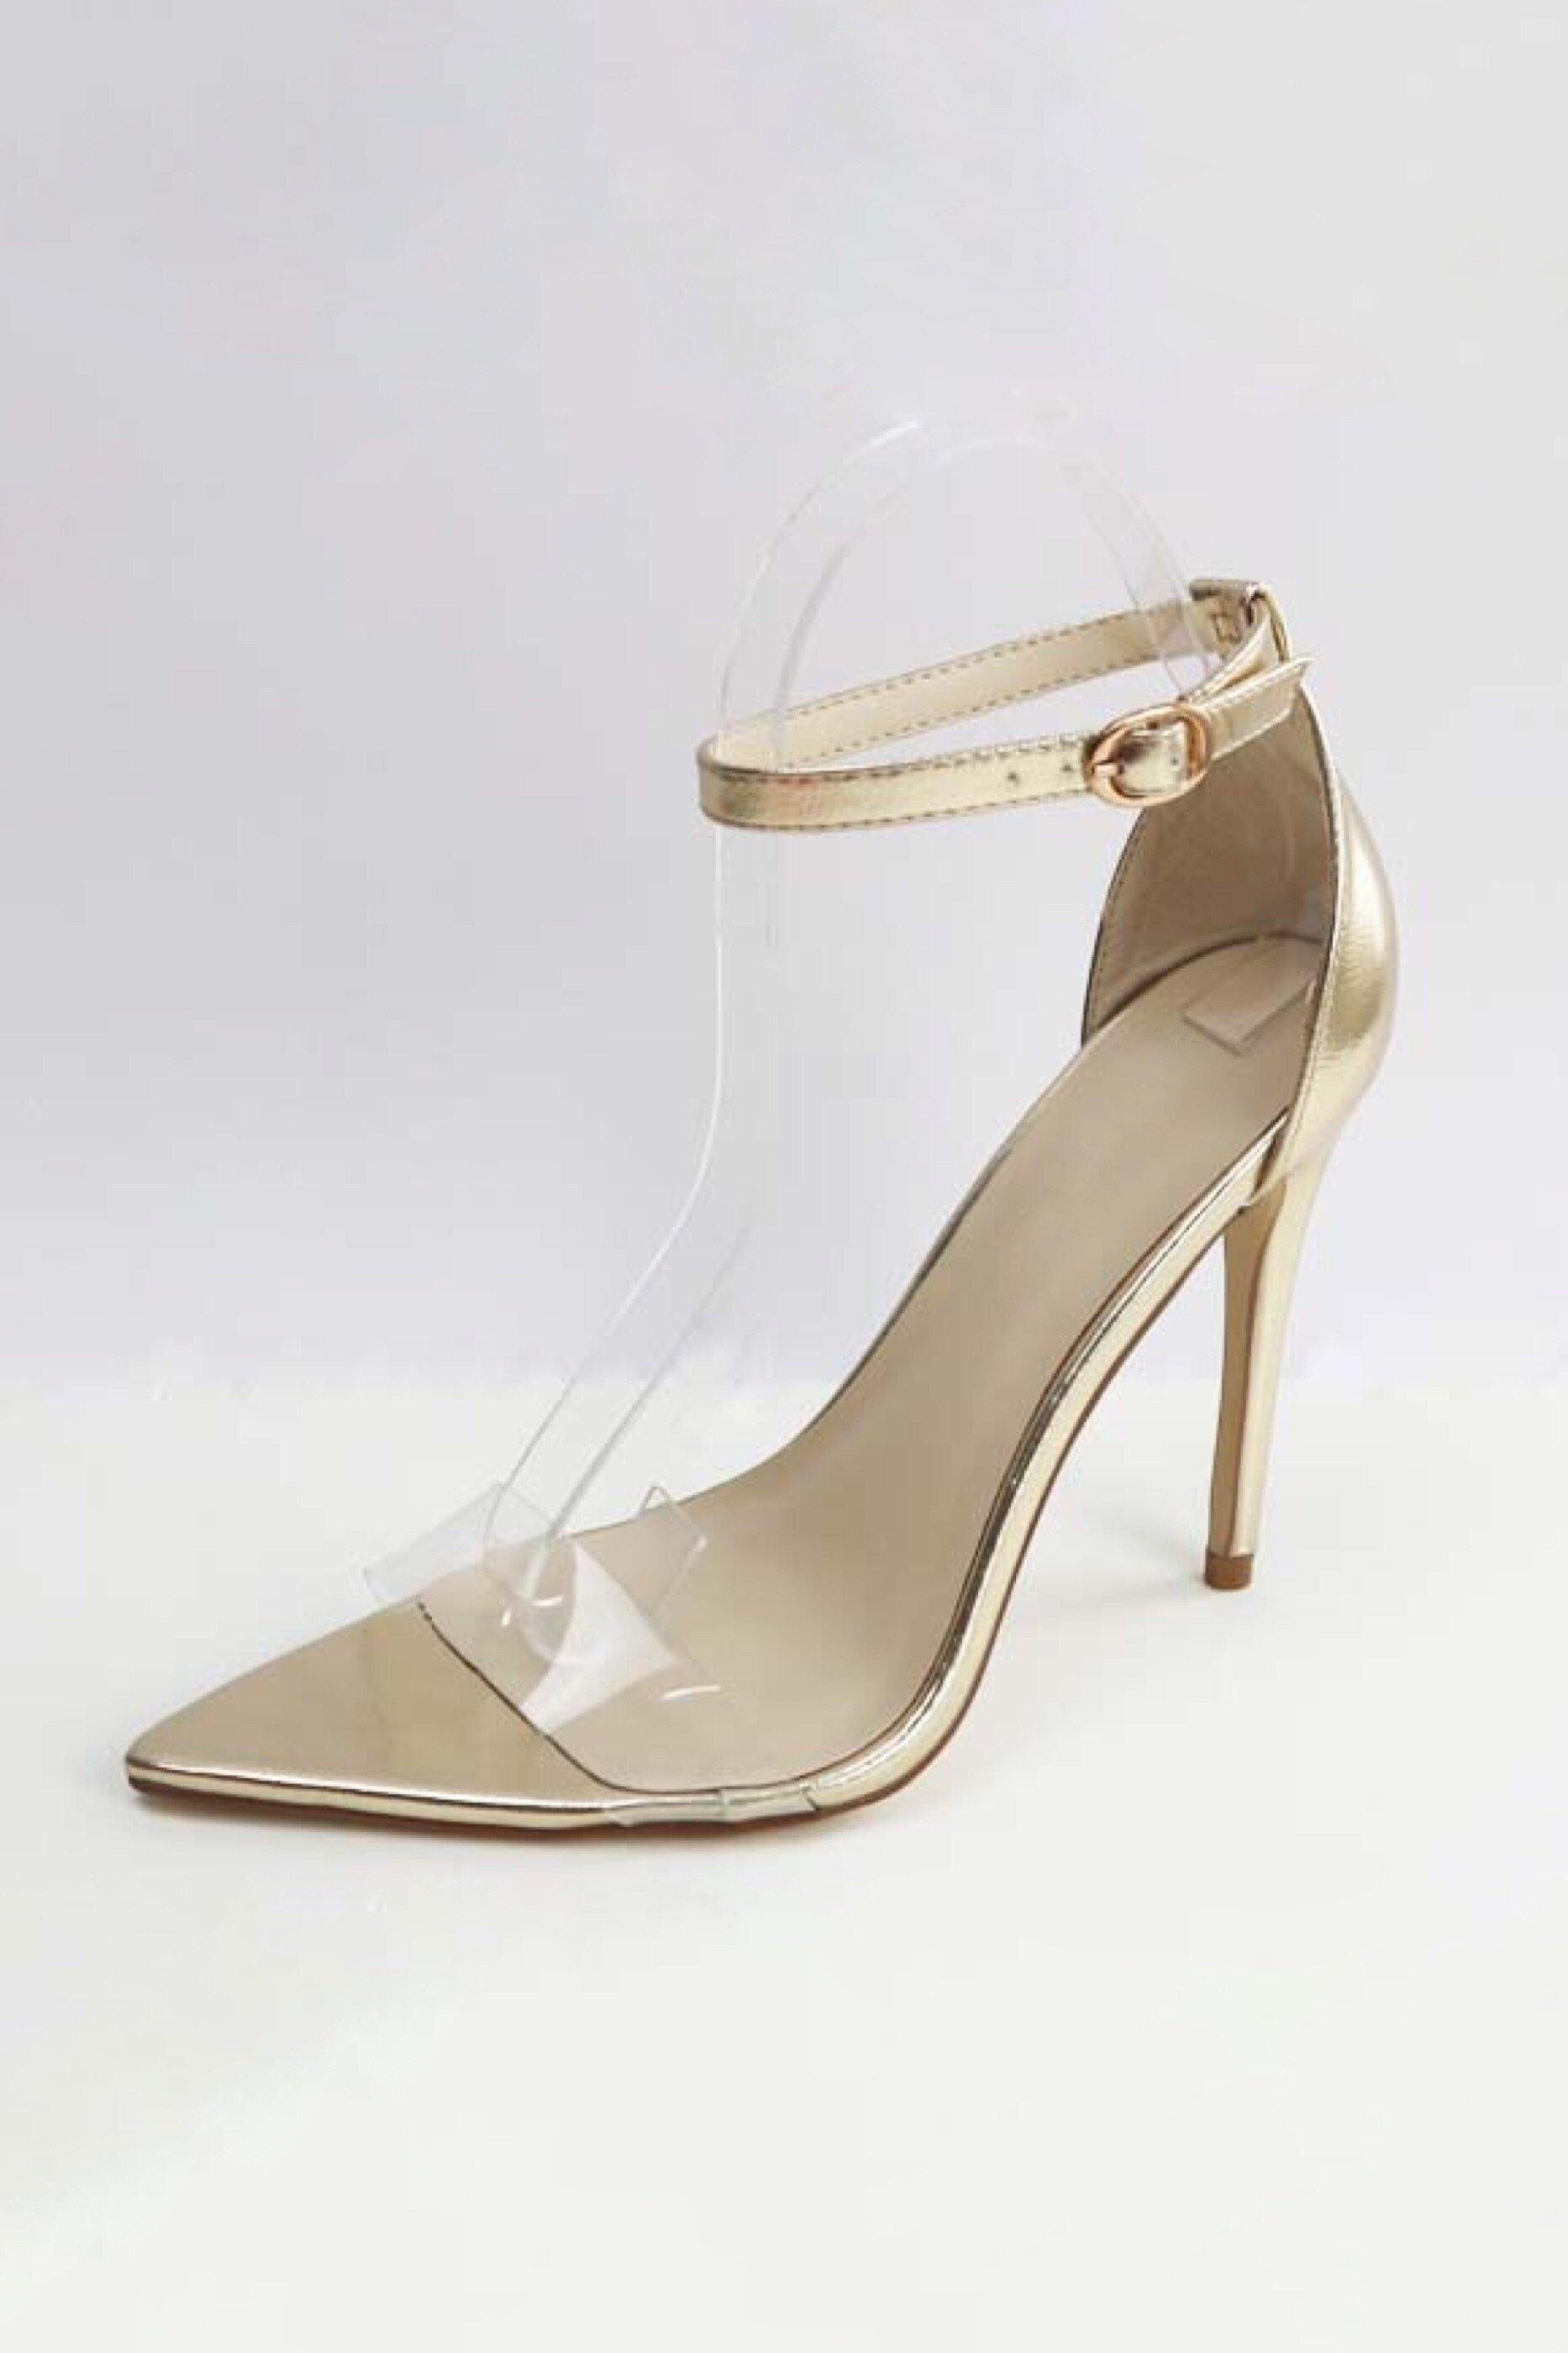 Taylor Rose Gold Ankle Strap Heels | Rose gold heels, Ankle strap heels,  Rose gold shoes